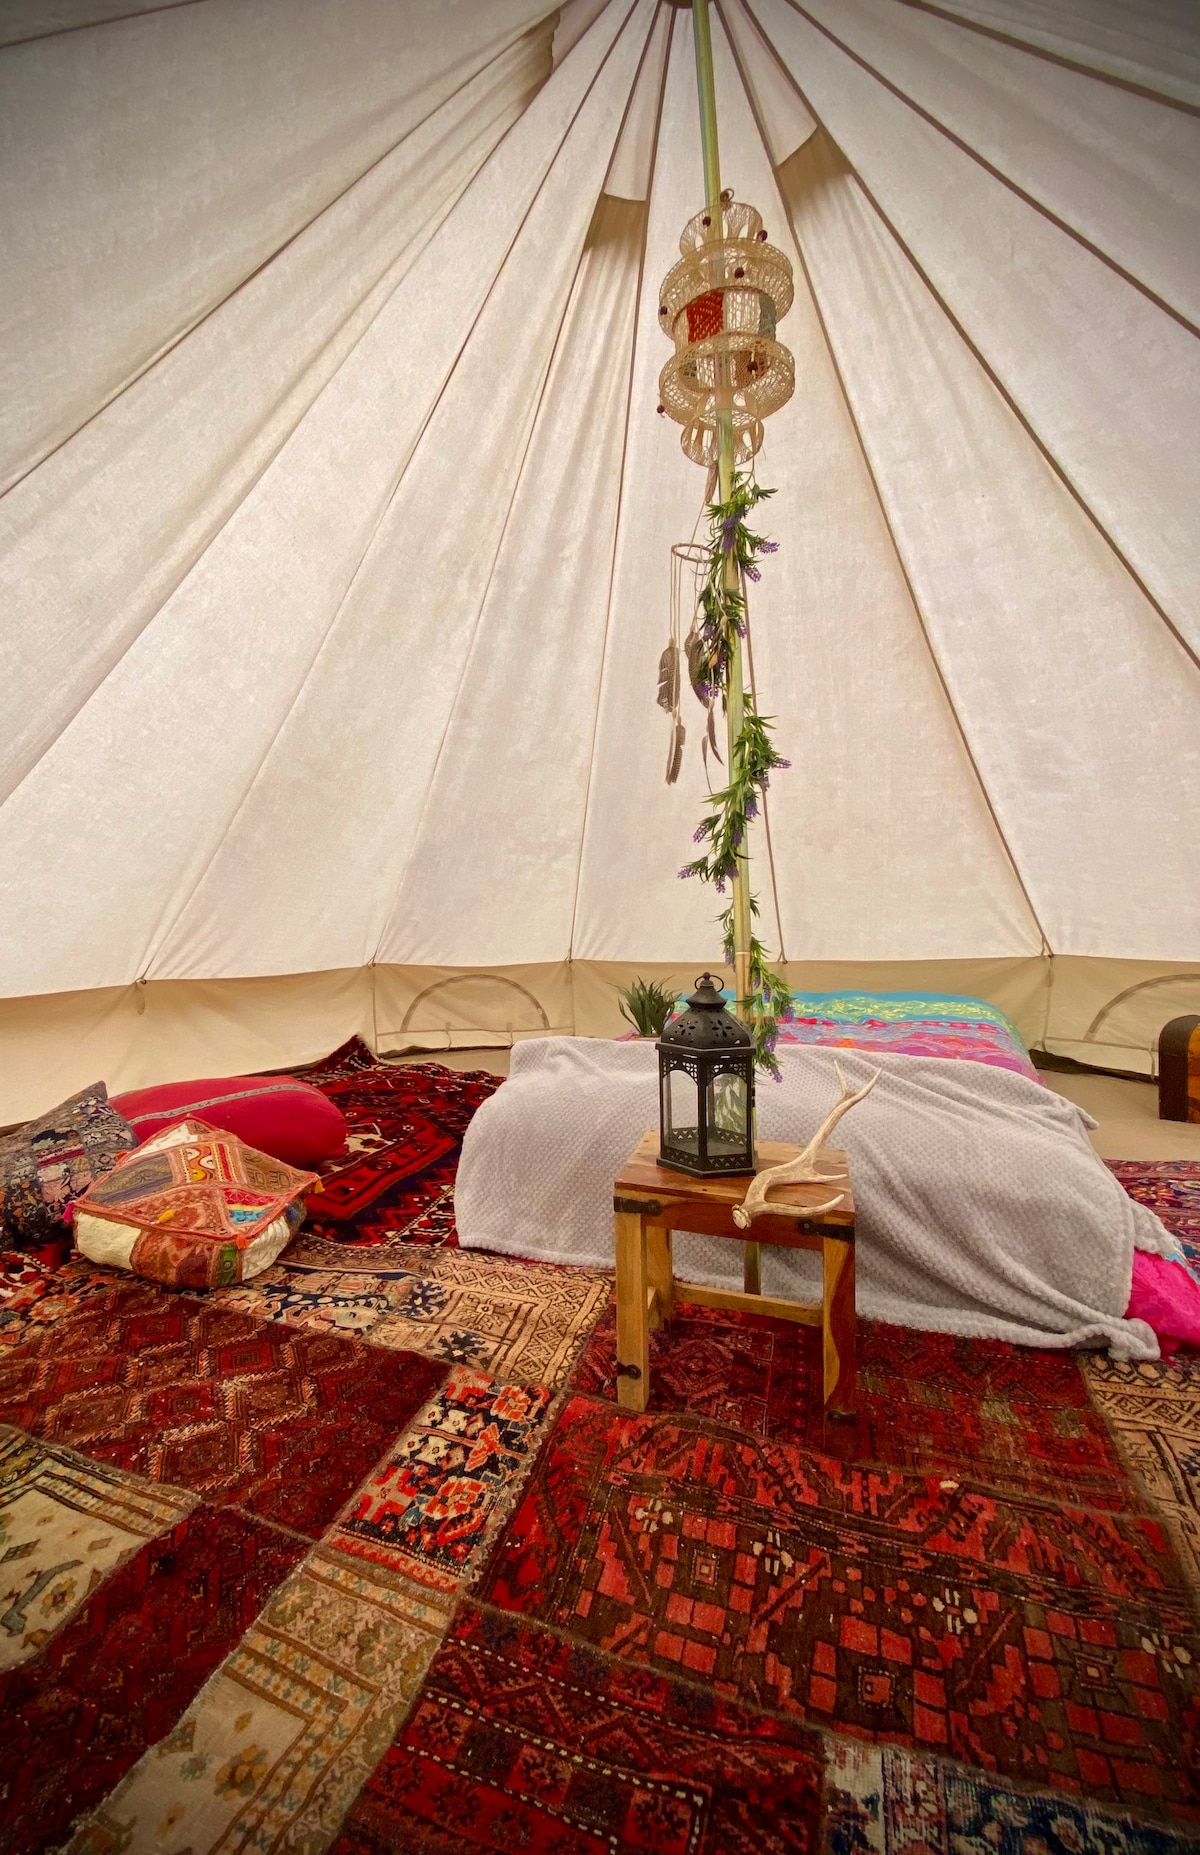 田园诗般的Eskdale印度主题4米钟形帐篷